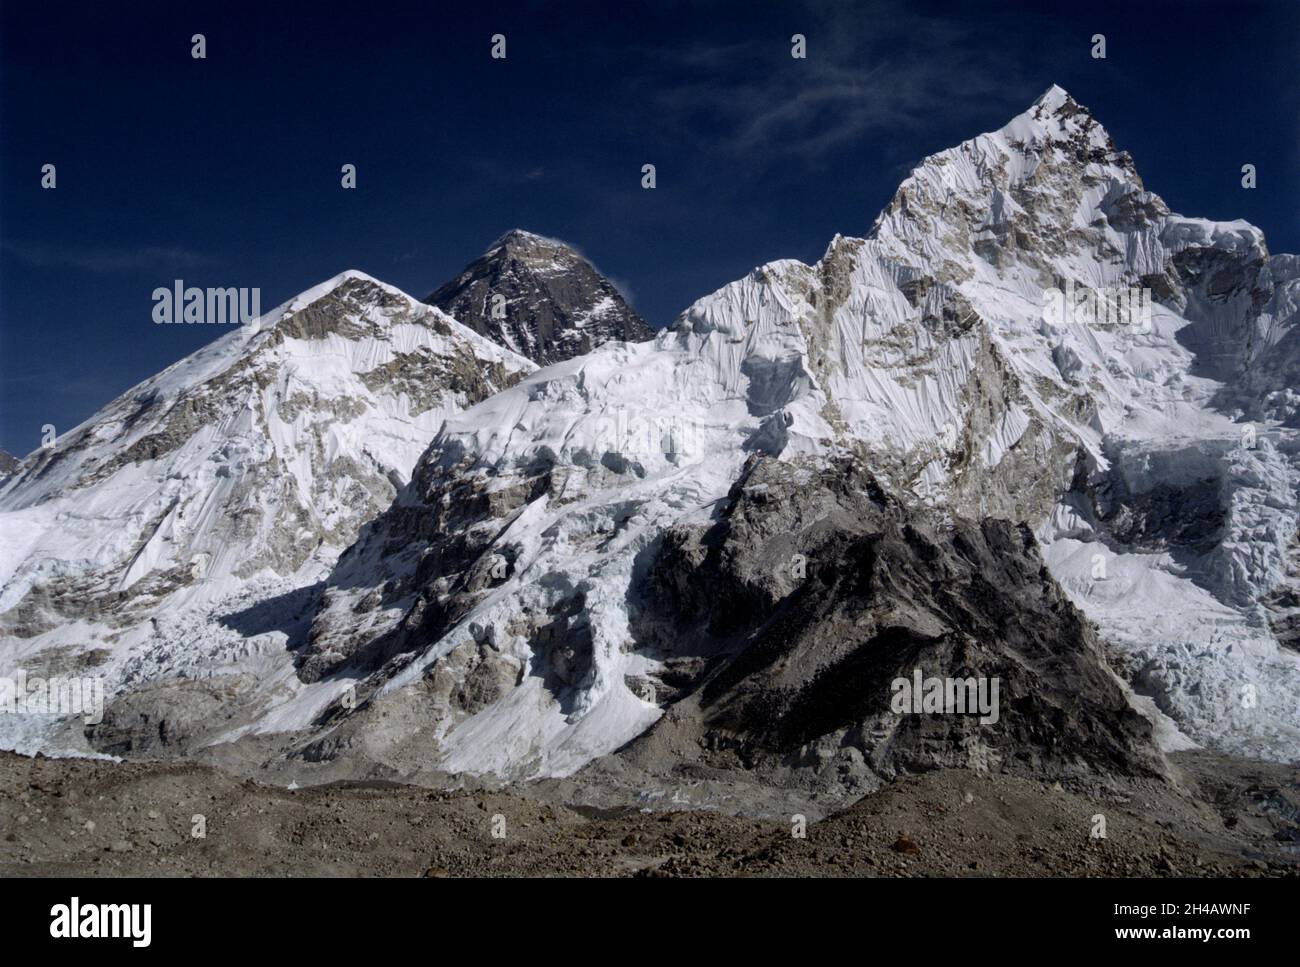 MOUNT EVEREST, NEPAL - Dezember 2005 - der Gipfel des Mount Everest (dunkler Gipfel Mitte links) - der höchste Berg der Welt mit 8848m - im Evere Stockfoto